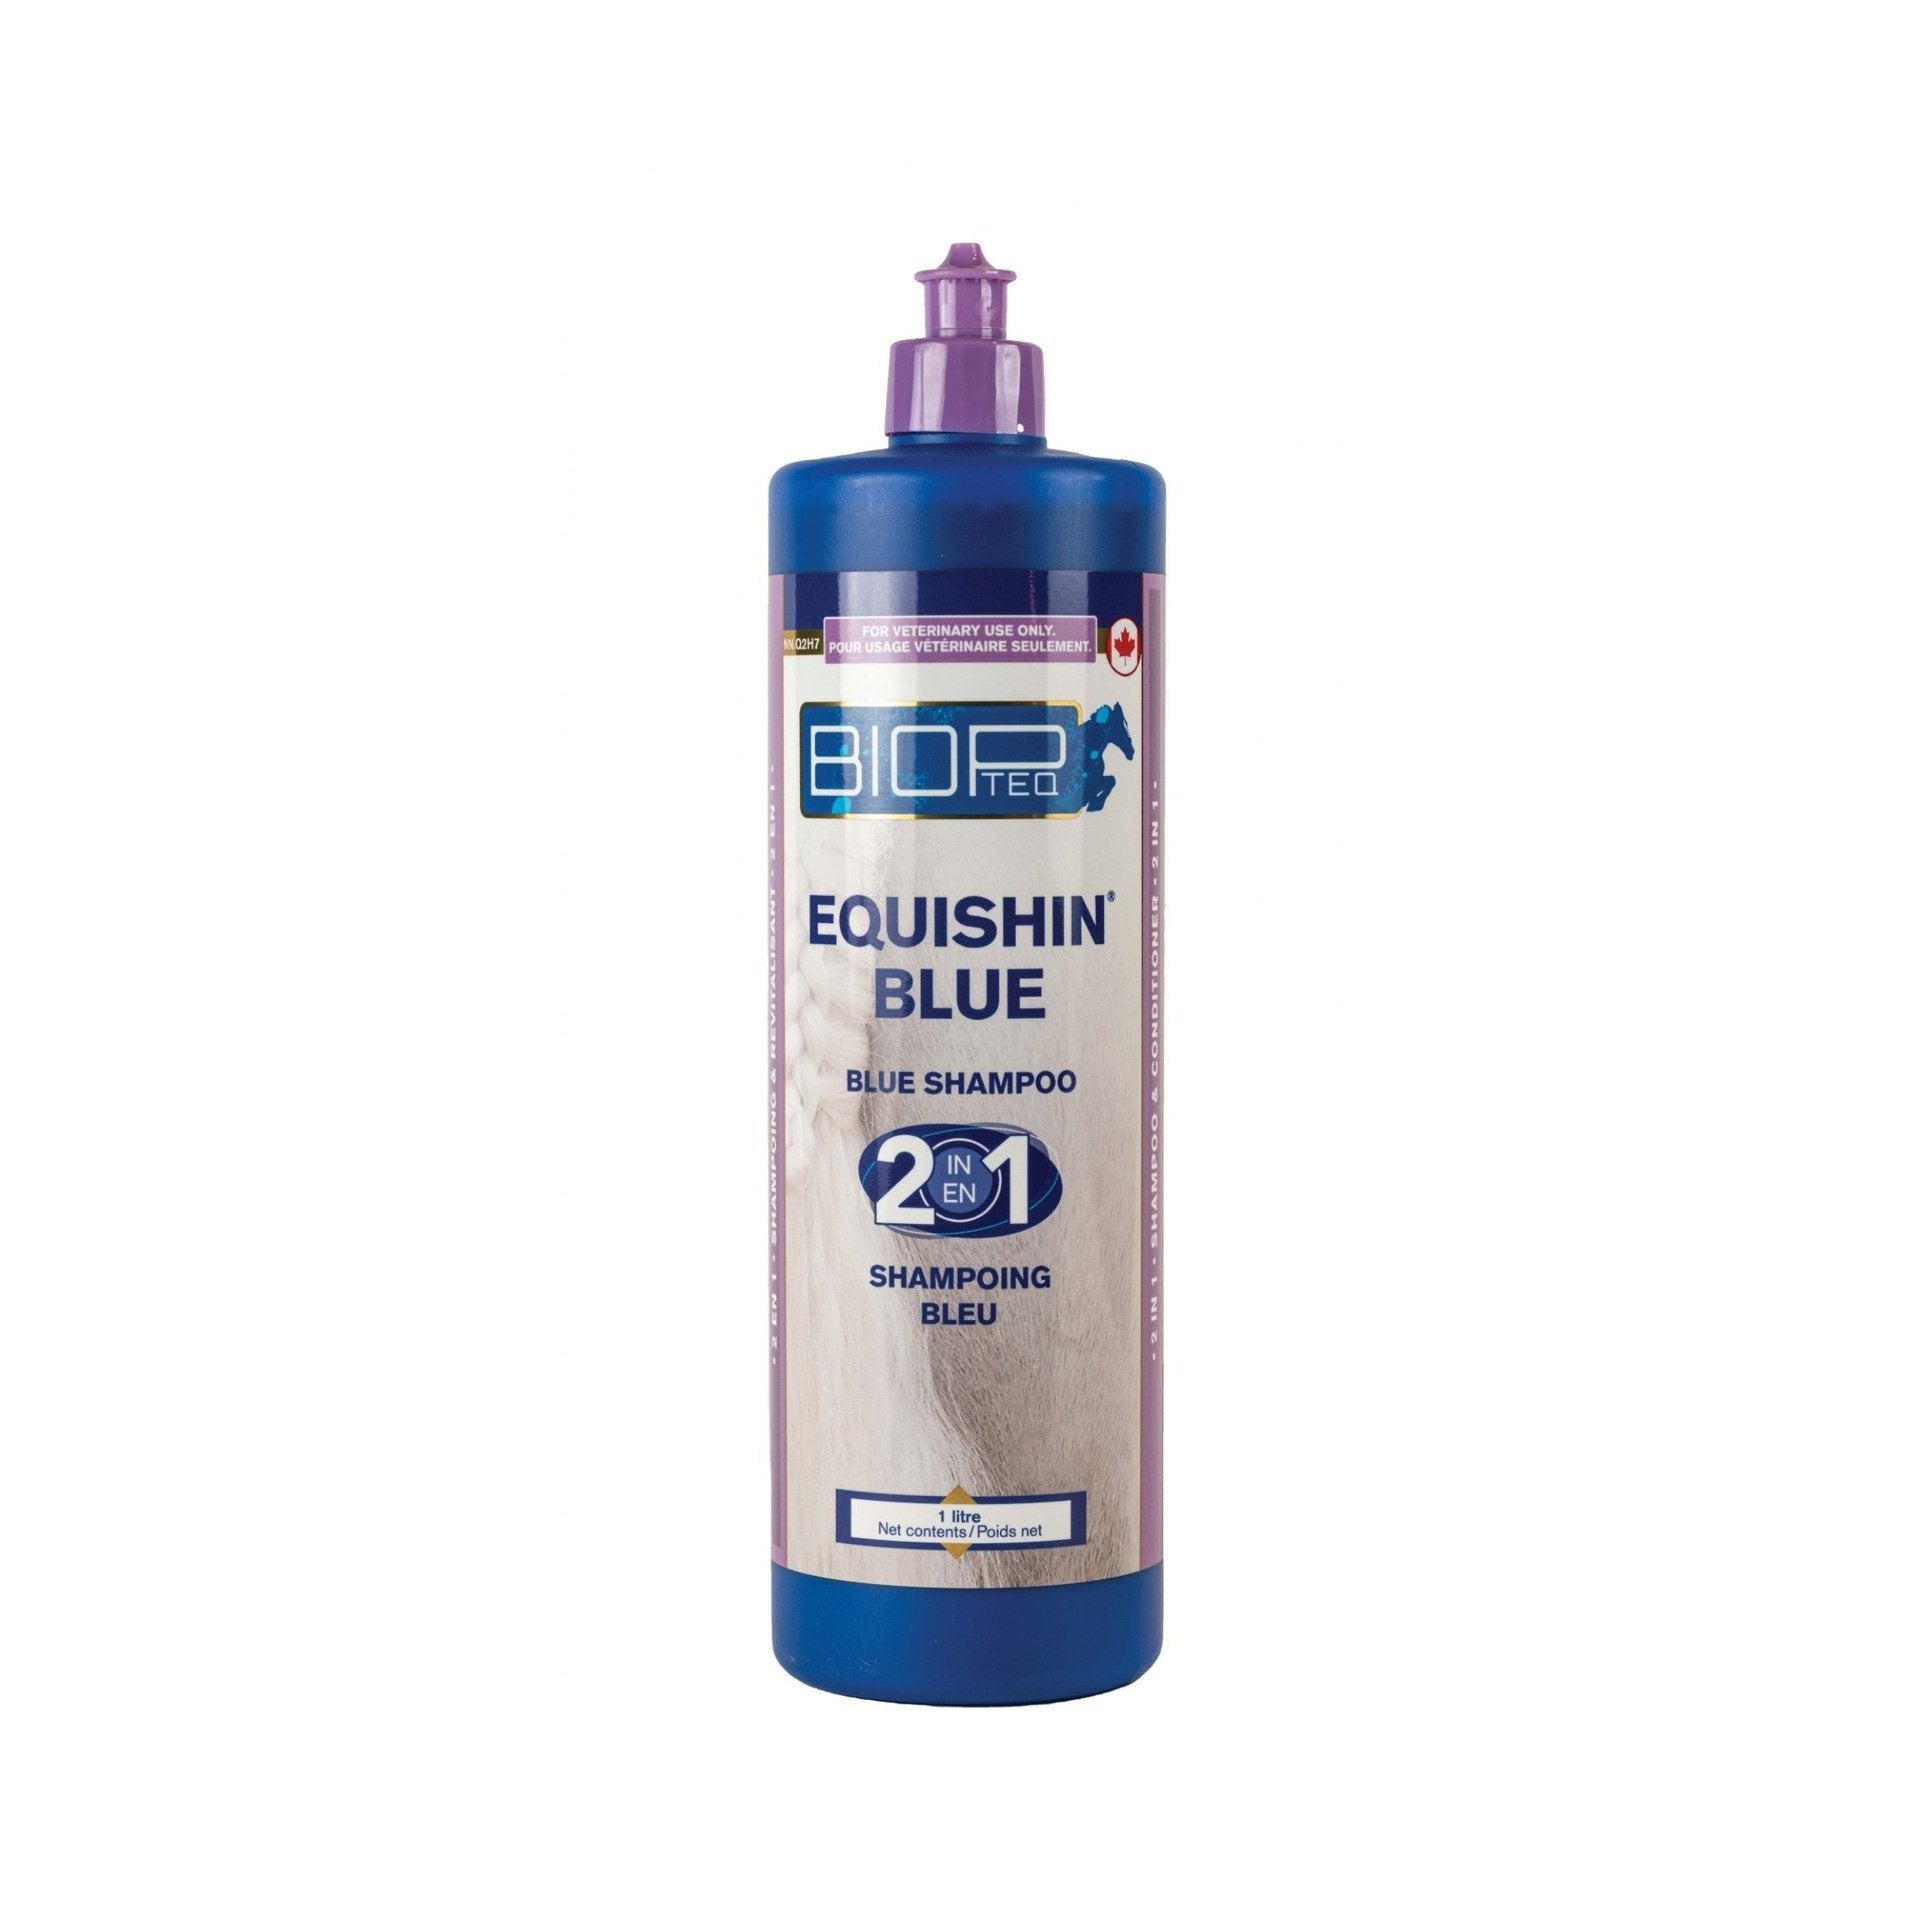 Biopteq - Shampoo & conditioner Equishin Blue 2-in-1, 1 L